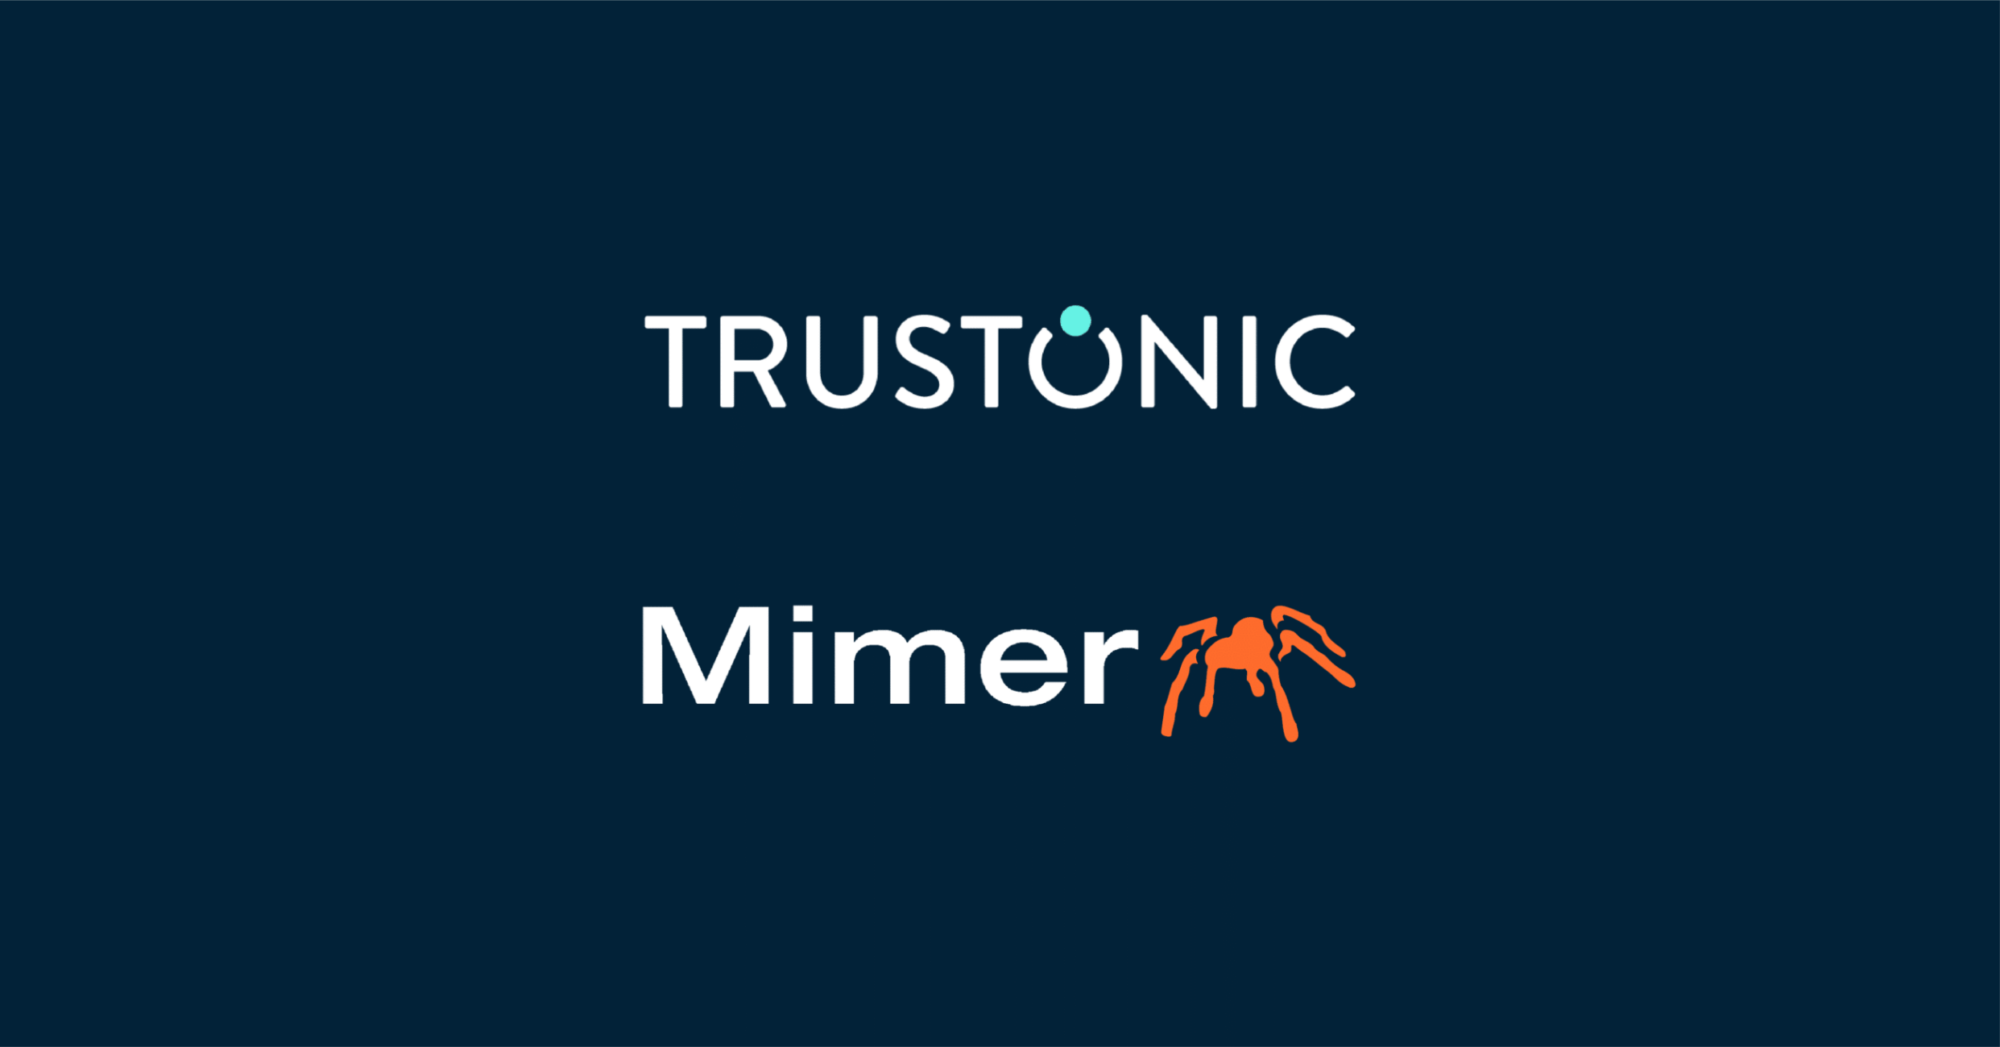 Trustonic & Mimer logos